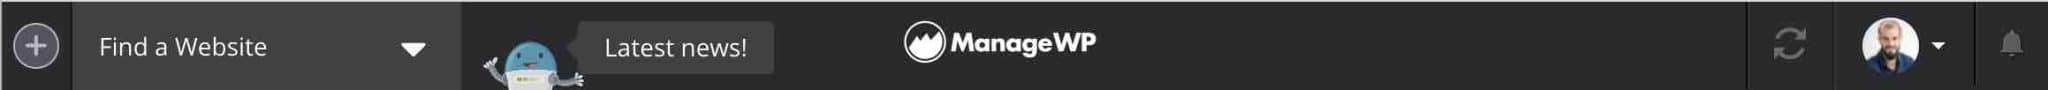 ManageWP's top navigation bar.